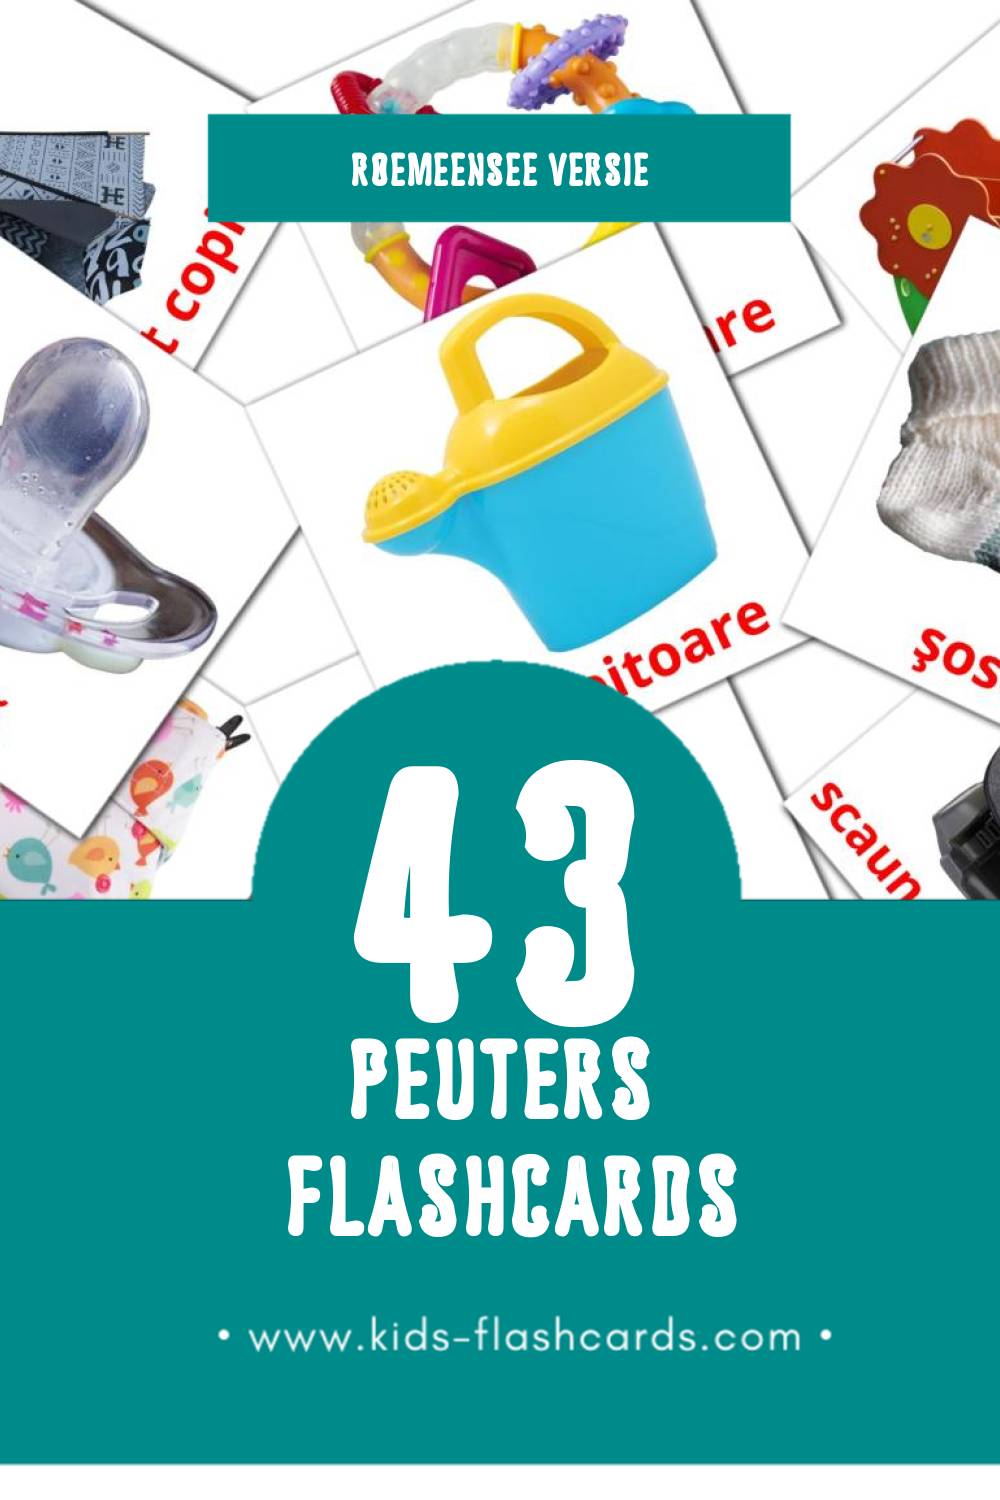 Visuele Bebe Flashcards voor Kleuters (43 kaarten in het Roemeense)